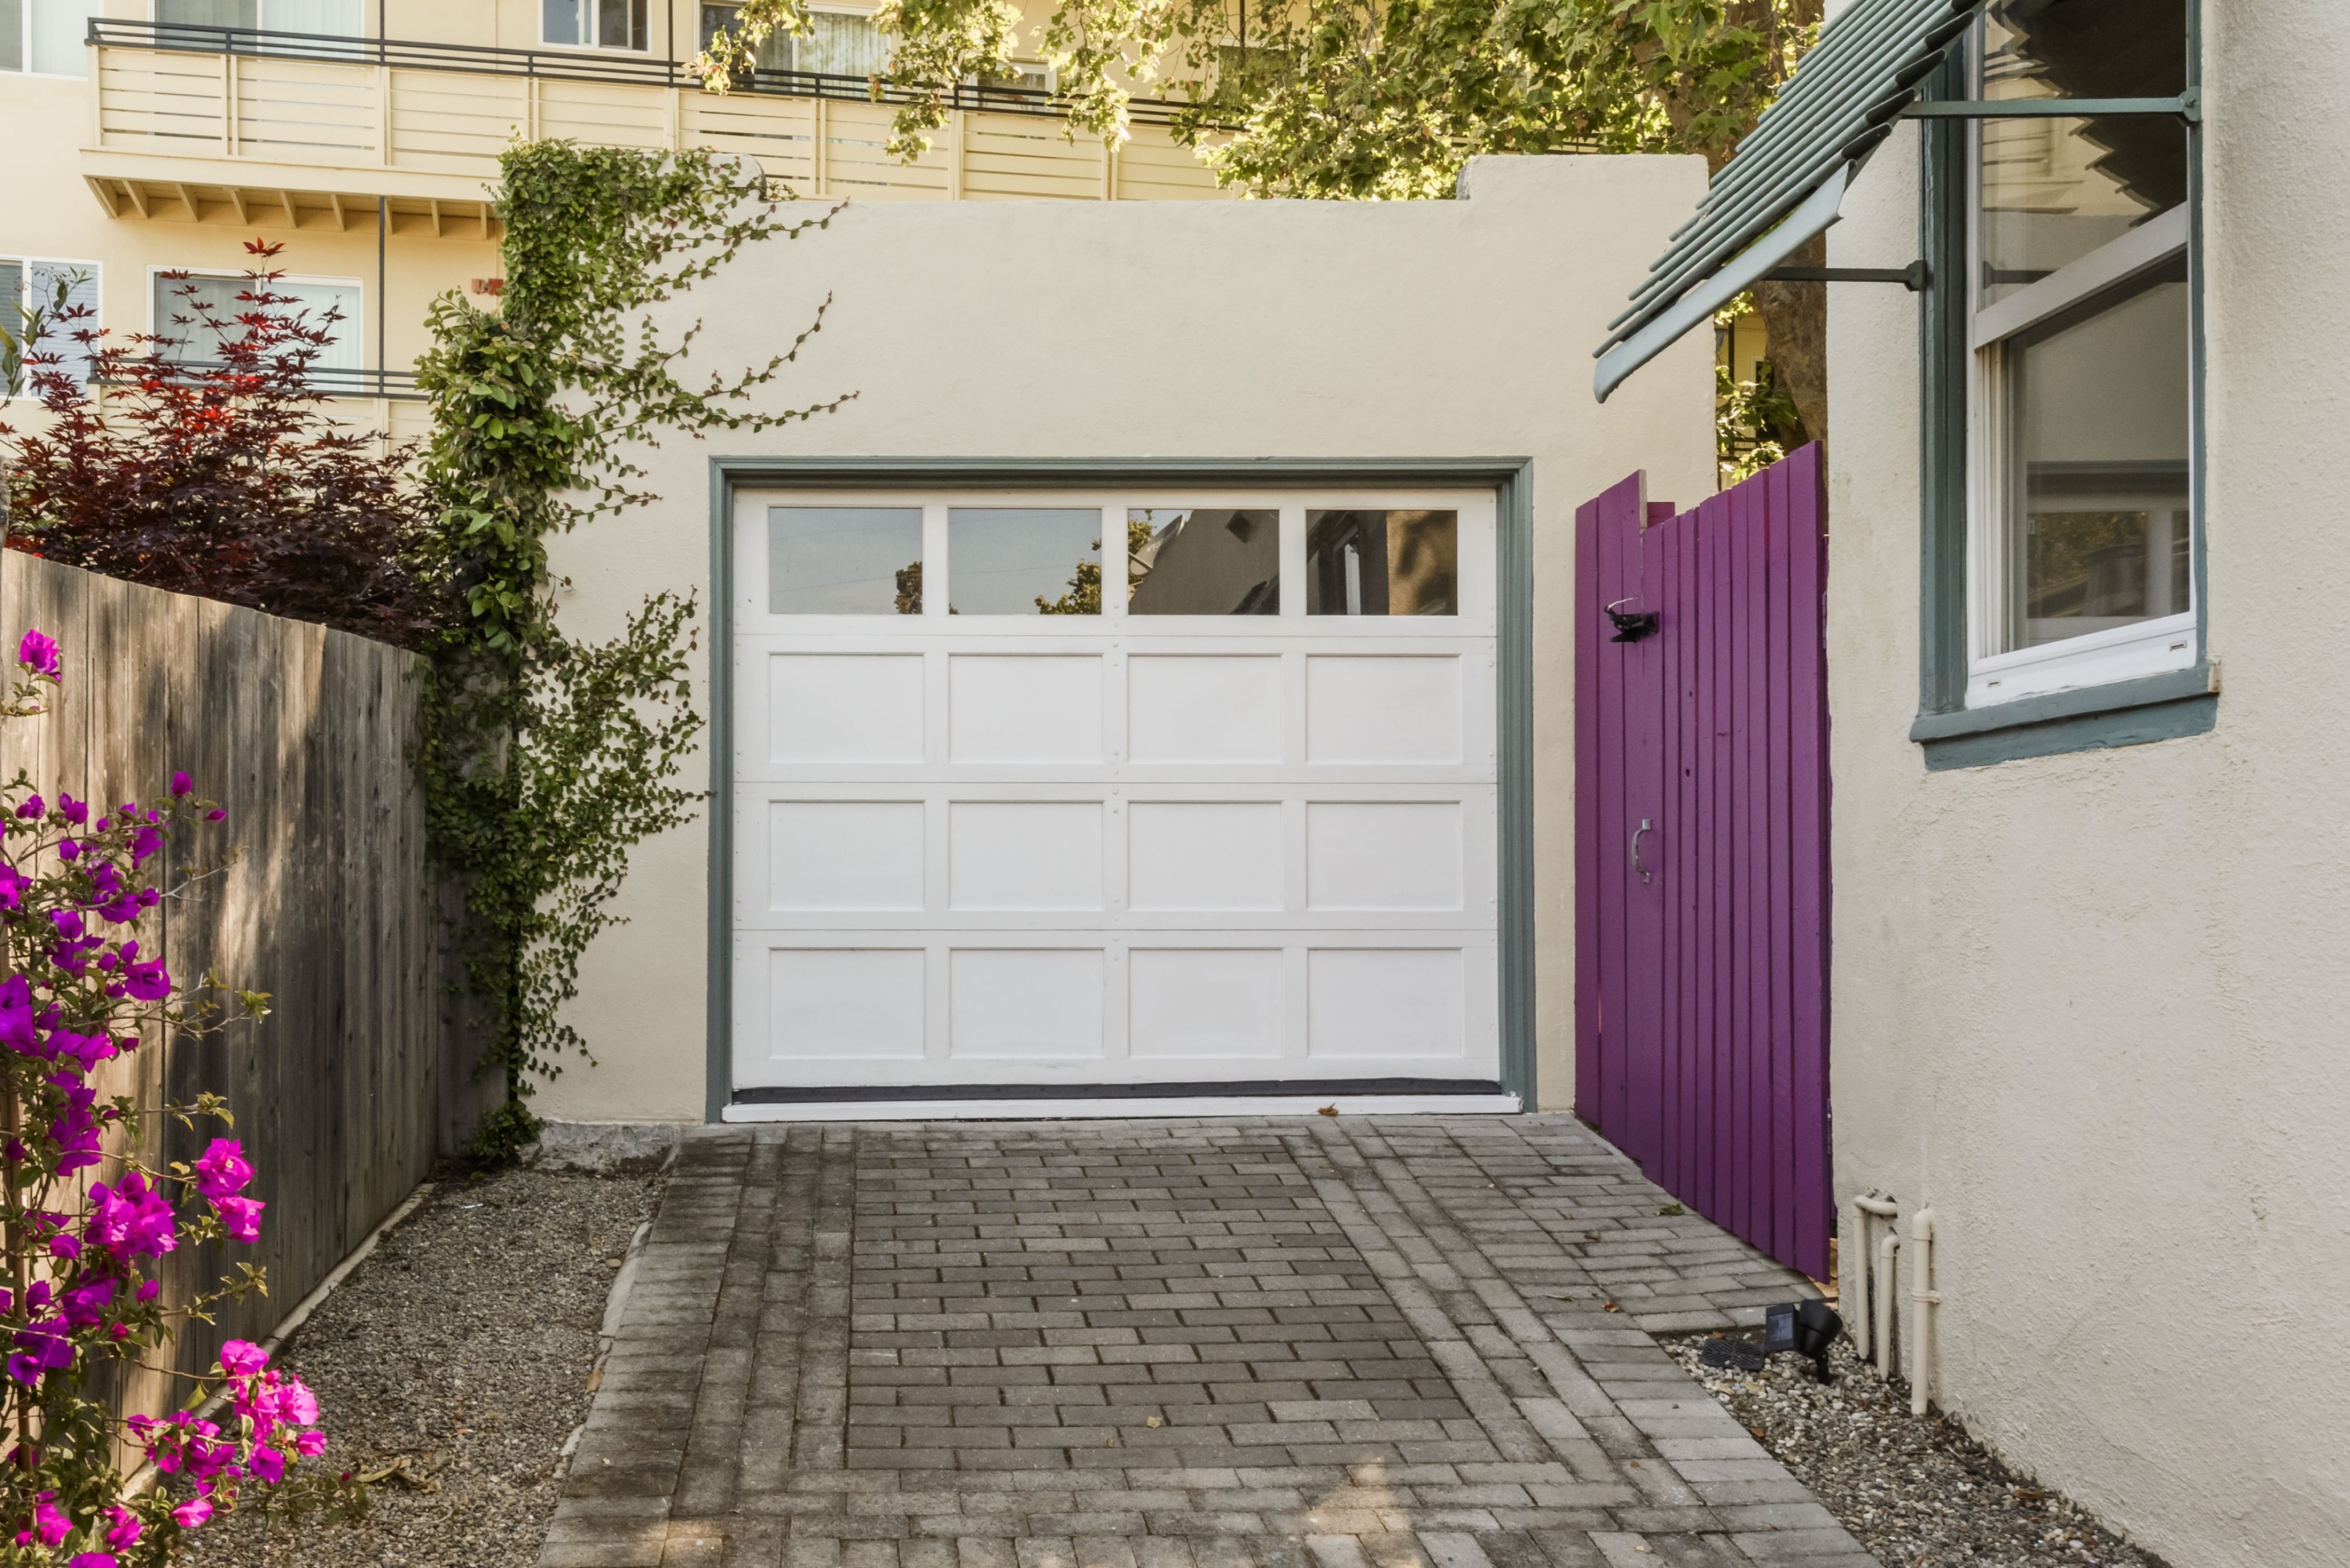 437 Wisnom Avenue Garage Door in Eastern Addition Neighborhood in San Mateo.